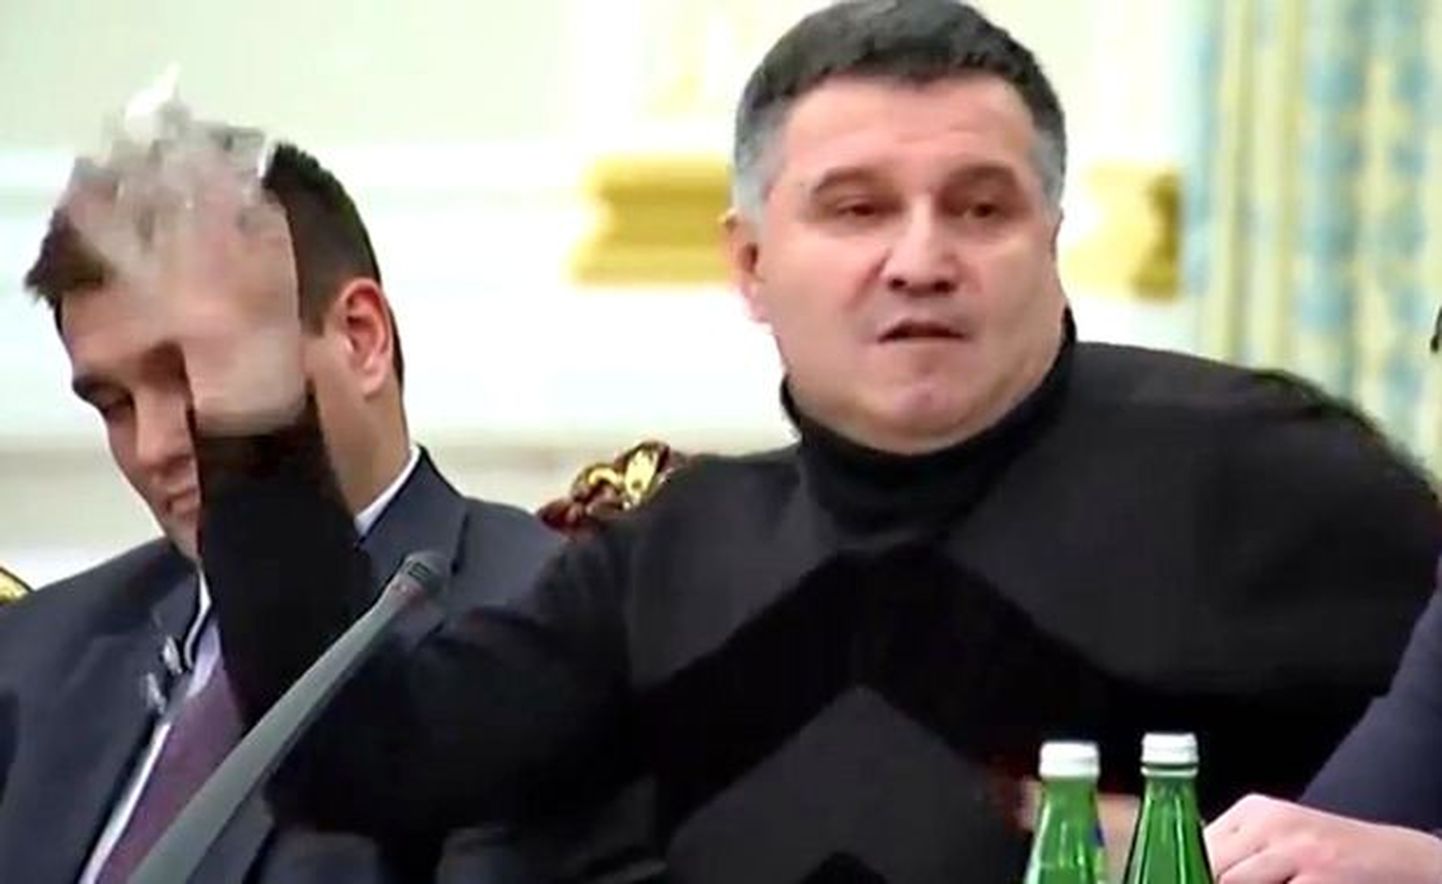 Ukraina siseminister Arsen Avakov parlamendis Mihheil Saakašvili suunas vee viskamiseks hoogu võtmas.